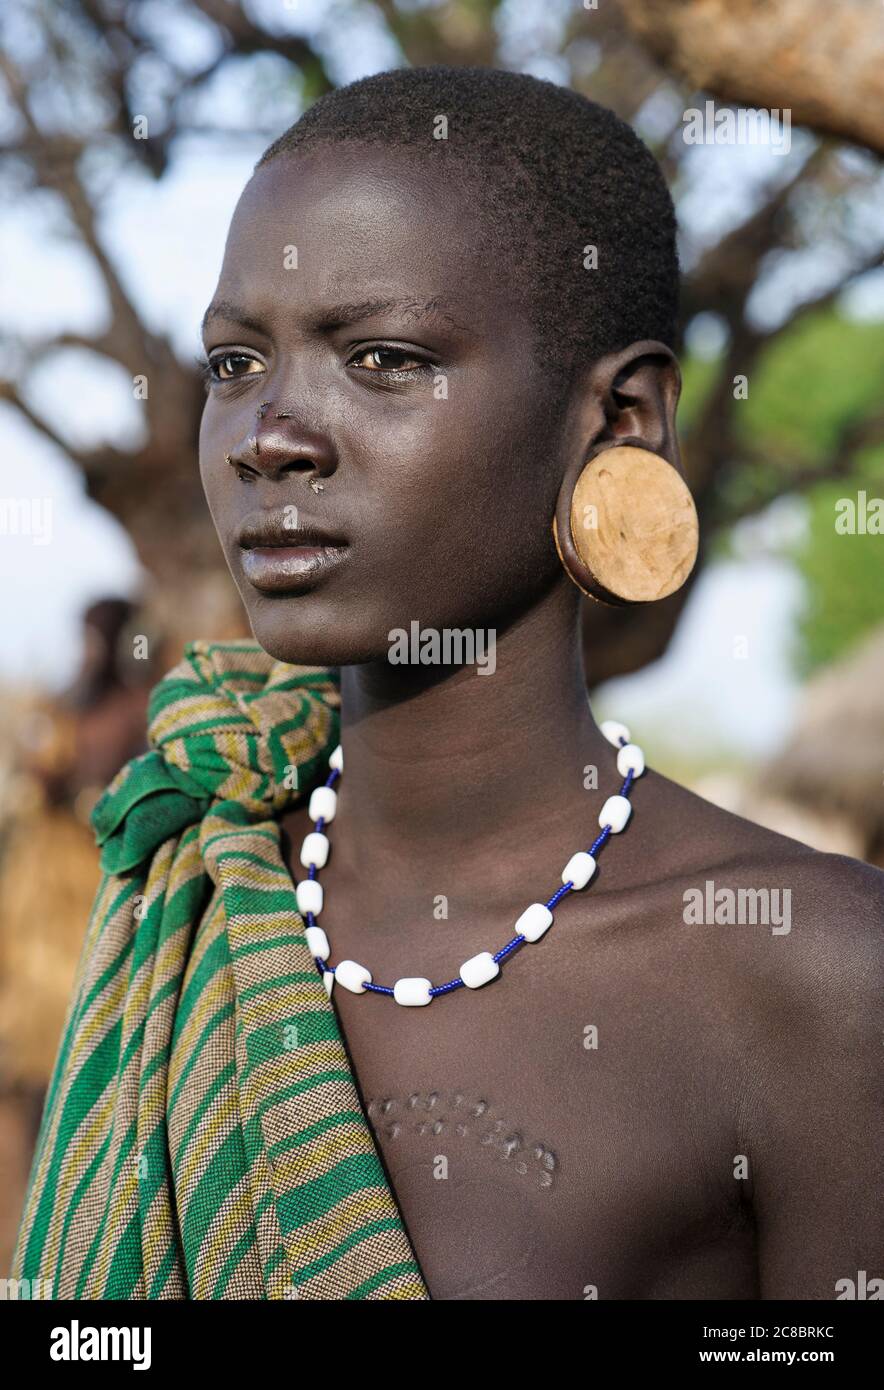 Éthiopie - Afrique, janvier 03. 2014:: Portrait de Mursi Girl dans le parc national de Mago, Ethiopie, Afrique Banque D'Images